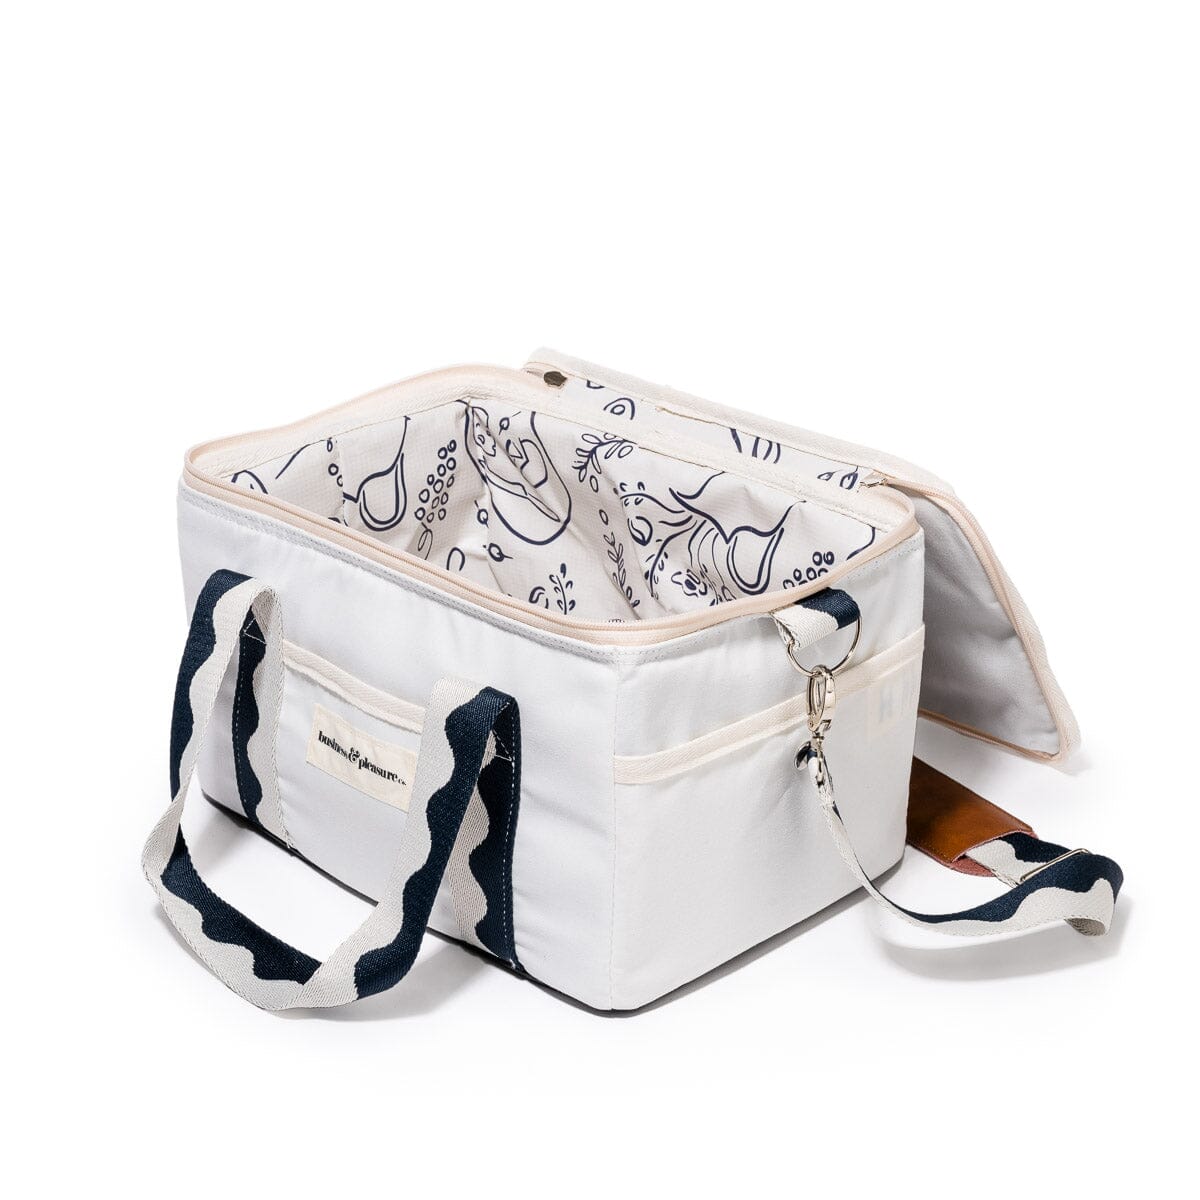 The Premium Cooler Bag - Rivie White Premium Cooler Business & Pleasure Co 